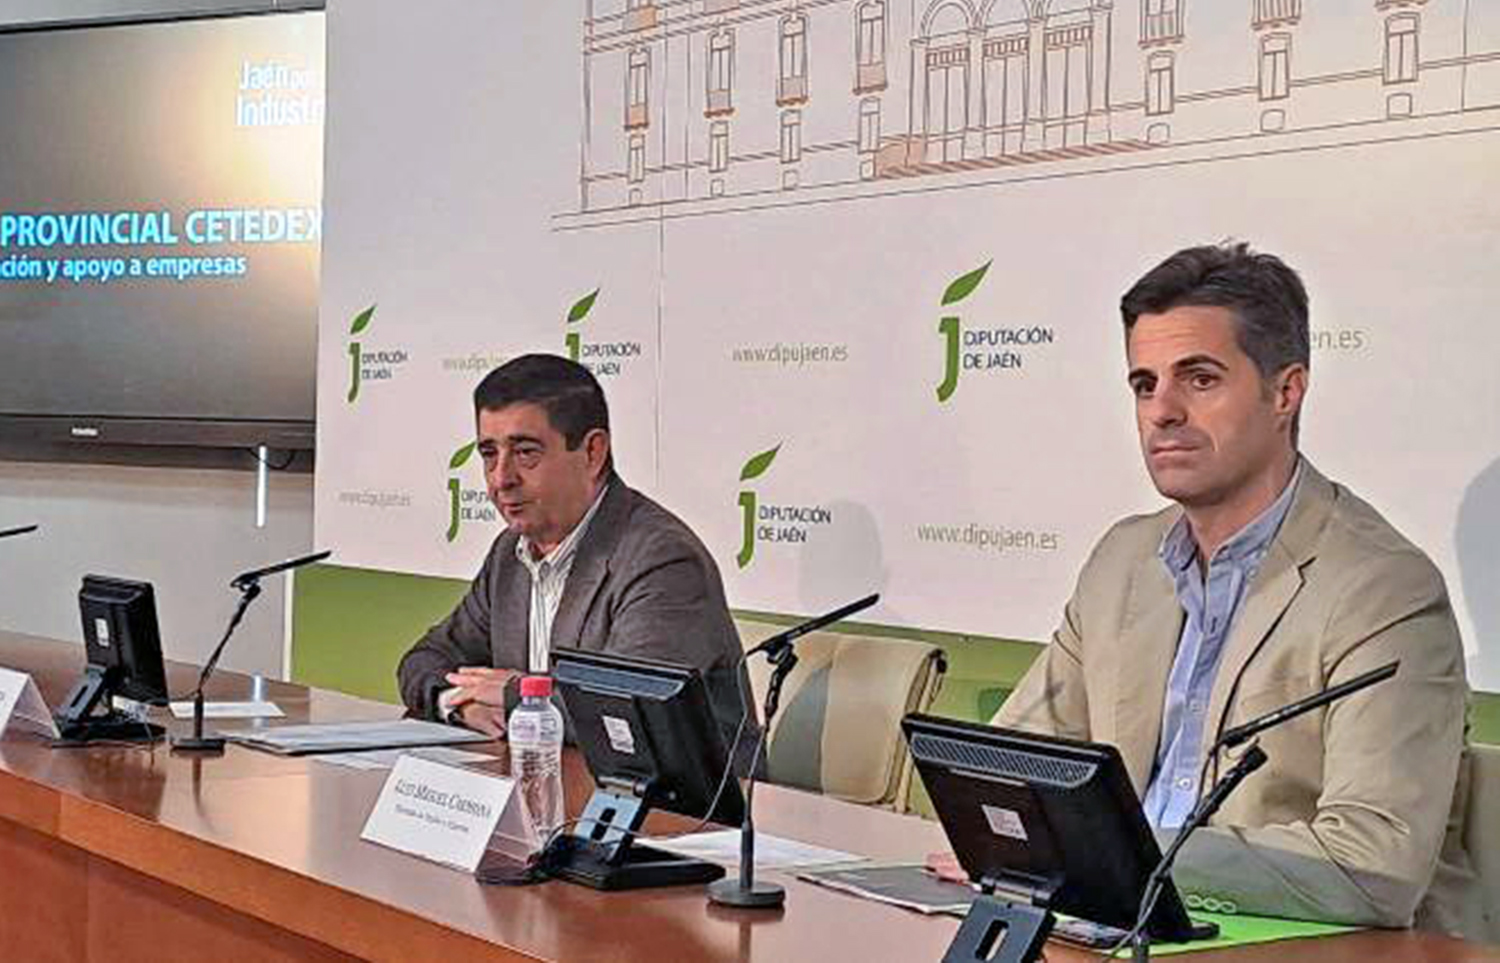 La Diputación de Jaén pone en marcha la Oficina Provincial CETEDEX para apoyar y captar empresas interesadas en este centro